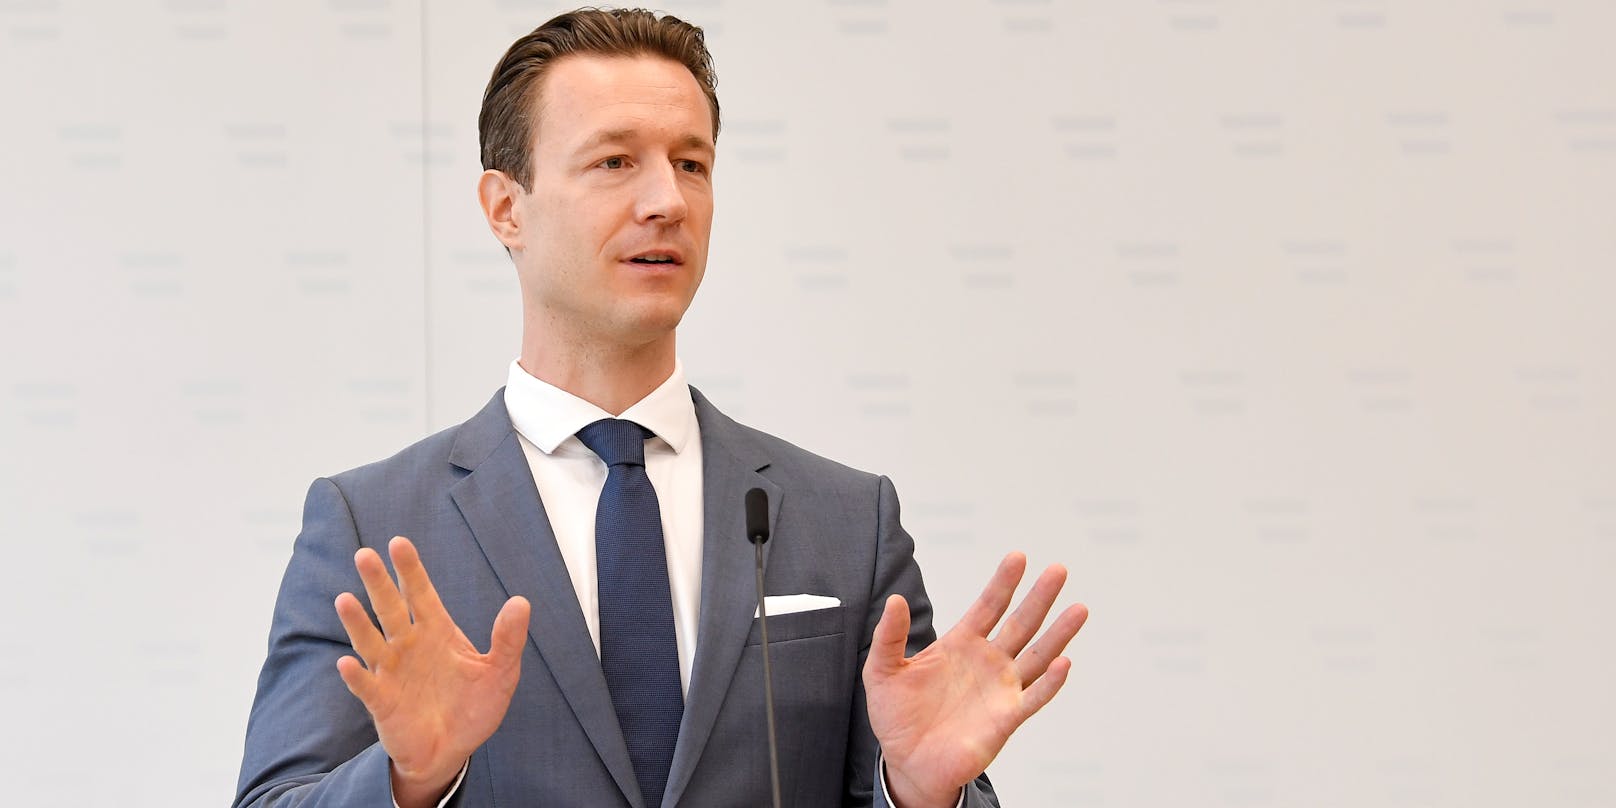 Österreichs Finanzminister Gernot Blümel kündigt ein hartes Vorgehen an: "Die Finanzpolizei wird weiter vehement gegen das illegale Glücksspiel vorgehen".